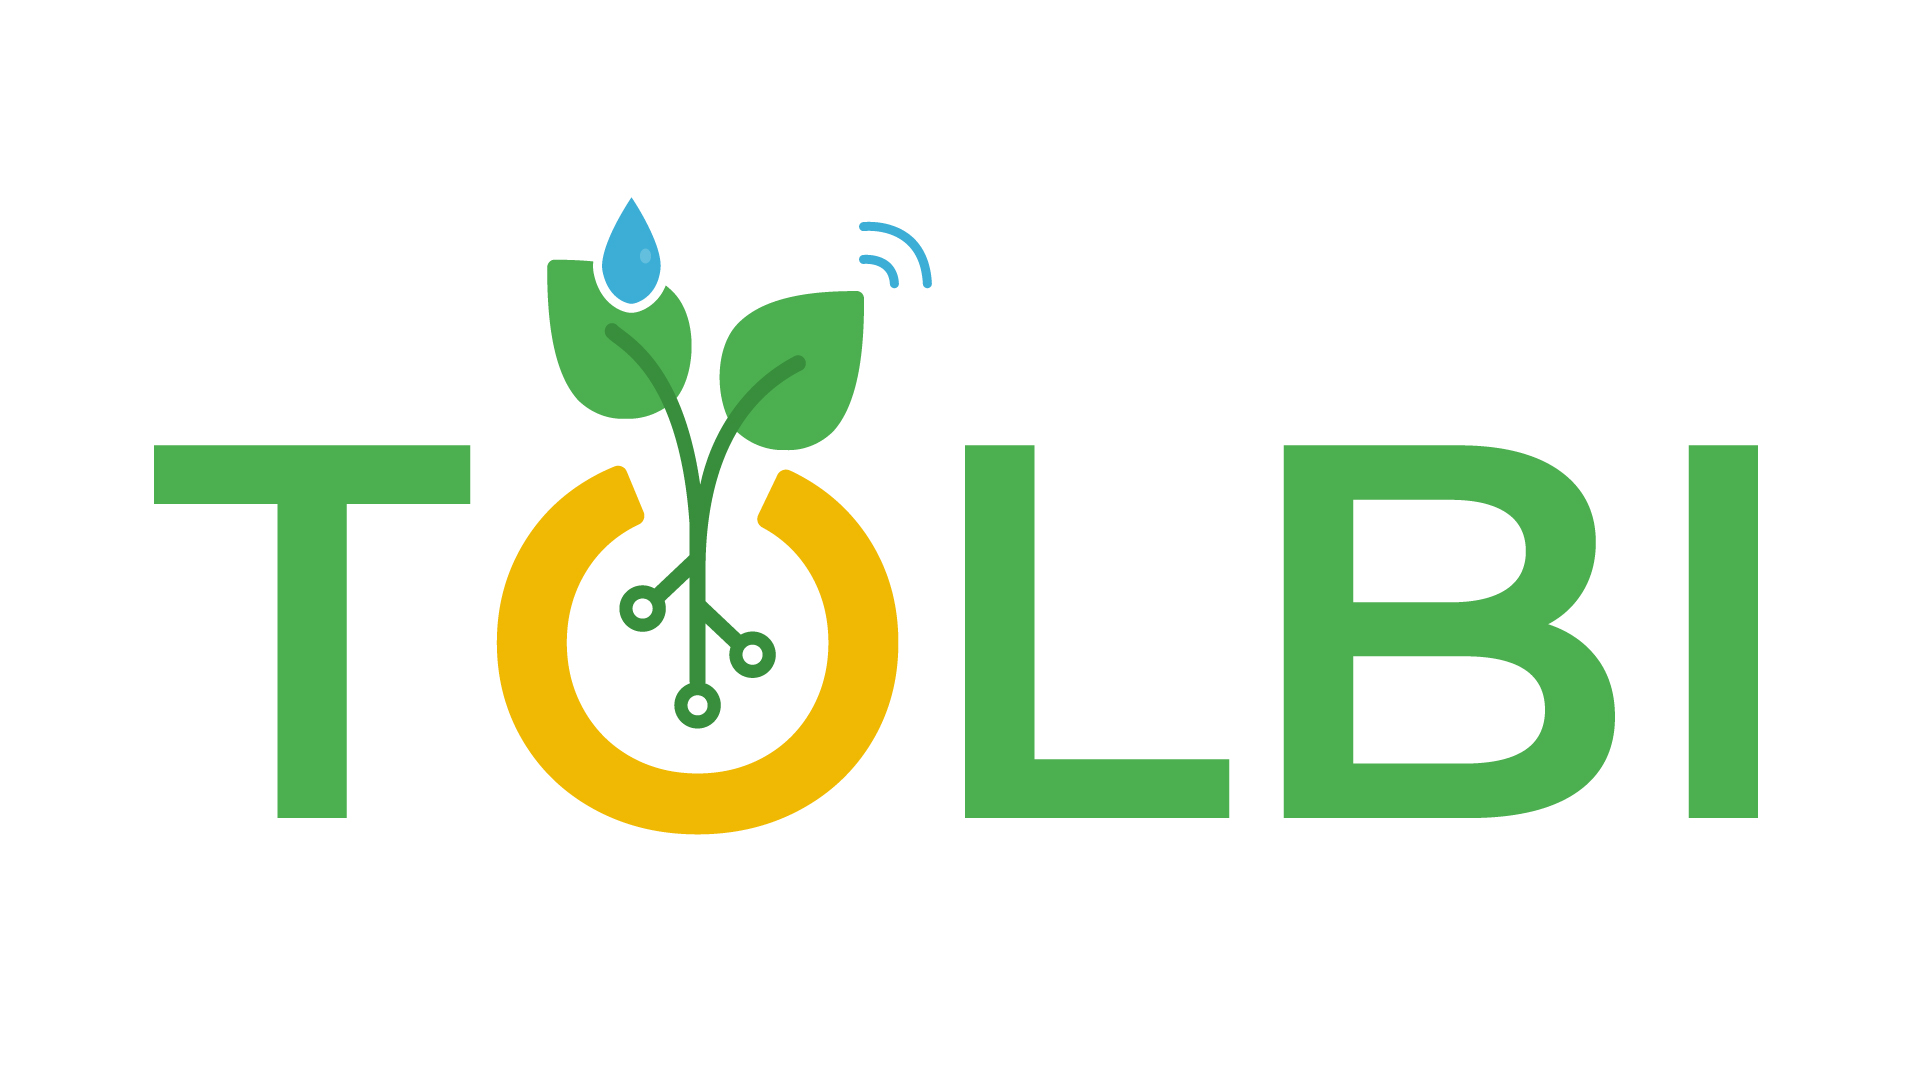 TOLBI, la start-up qui modernise l'agriculture au Sénégal